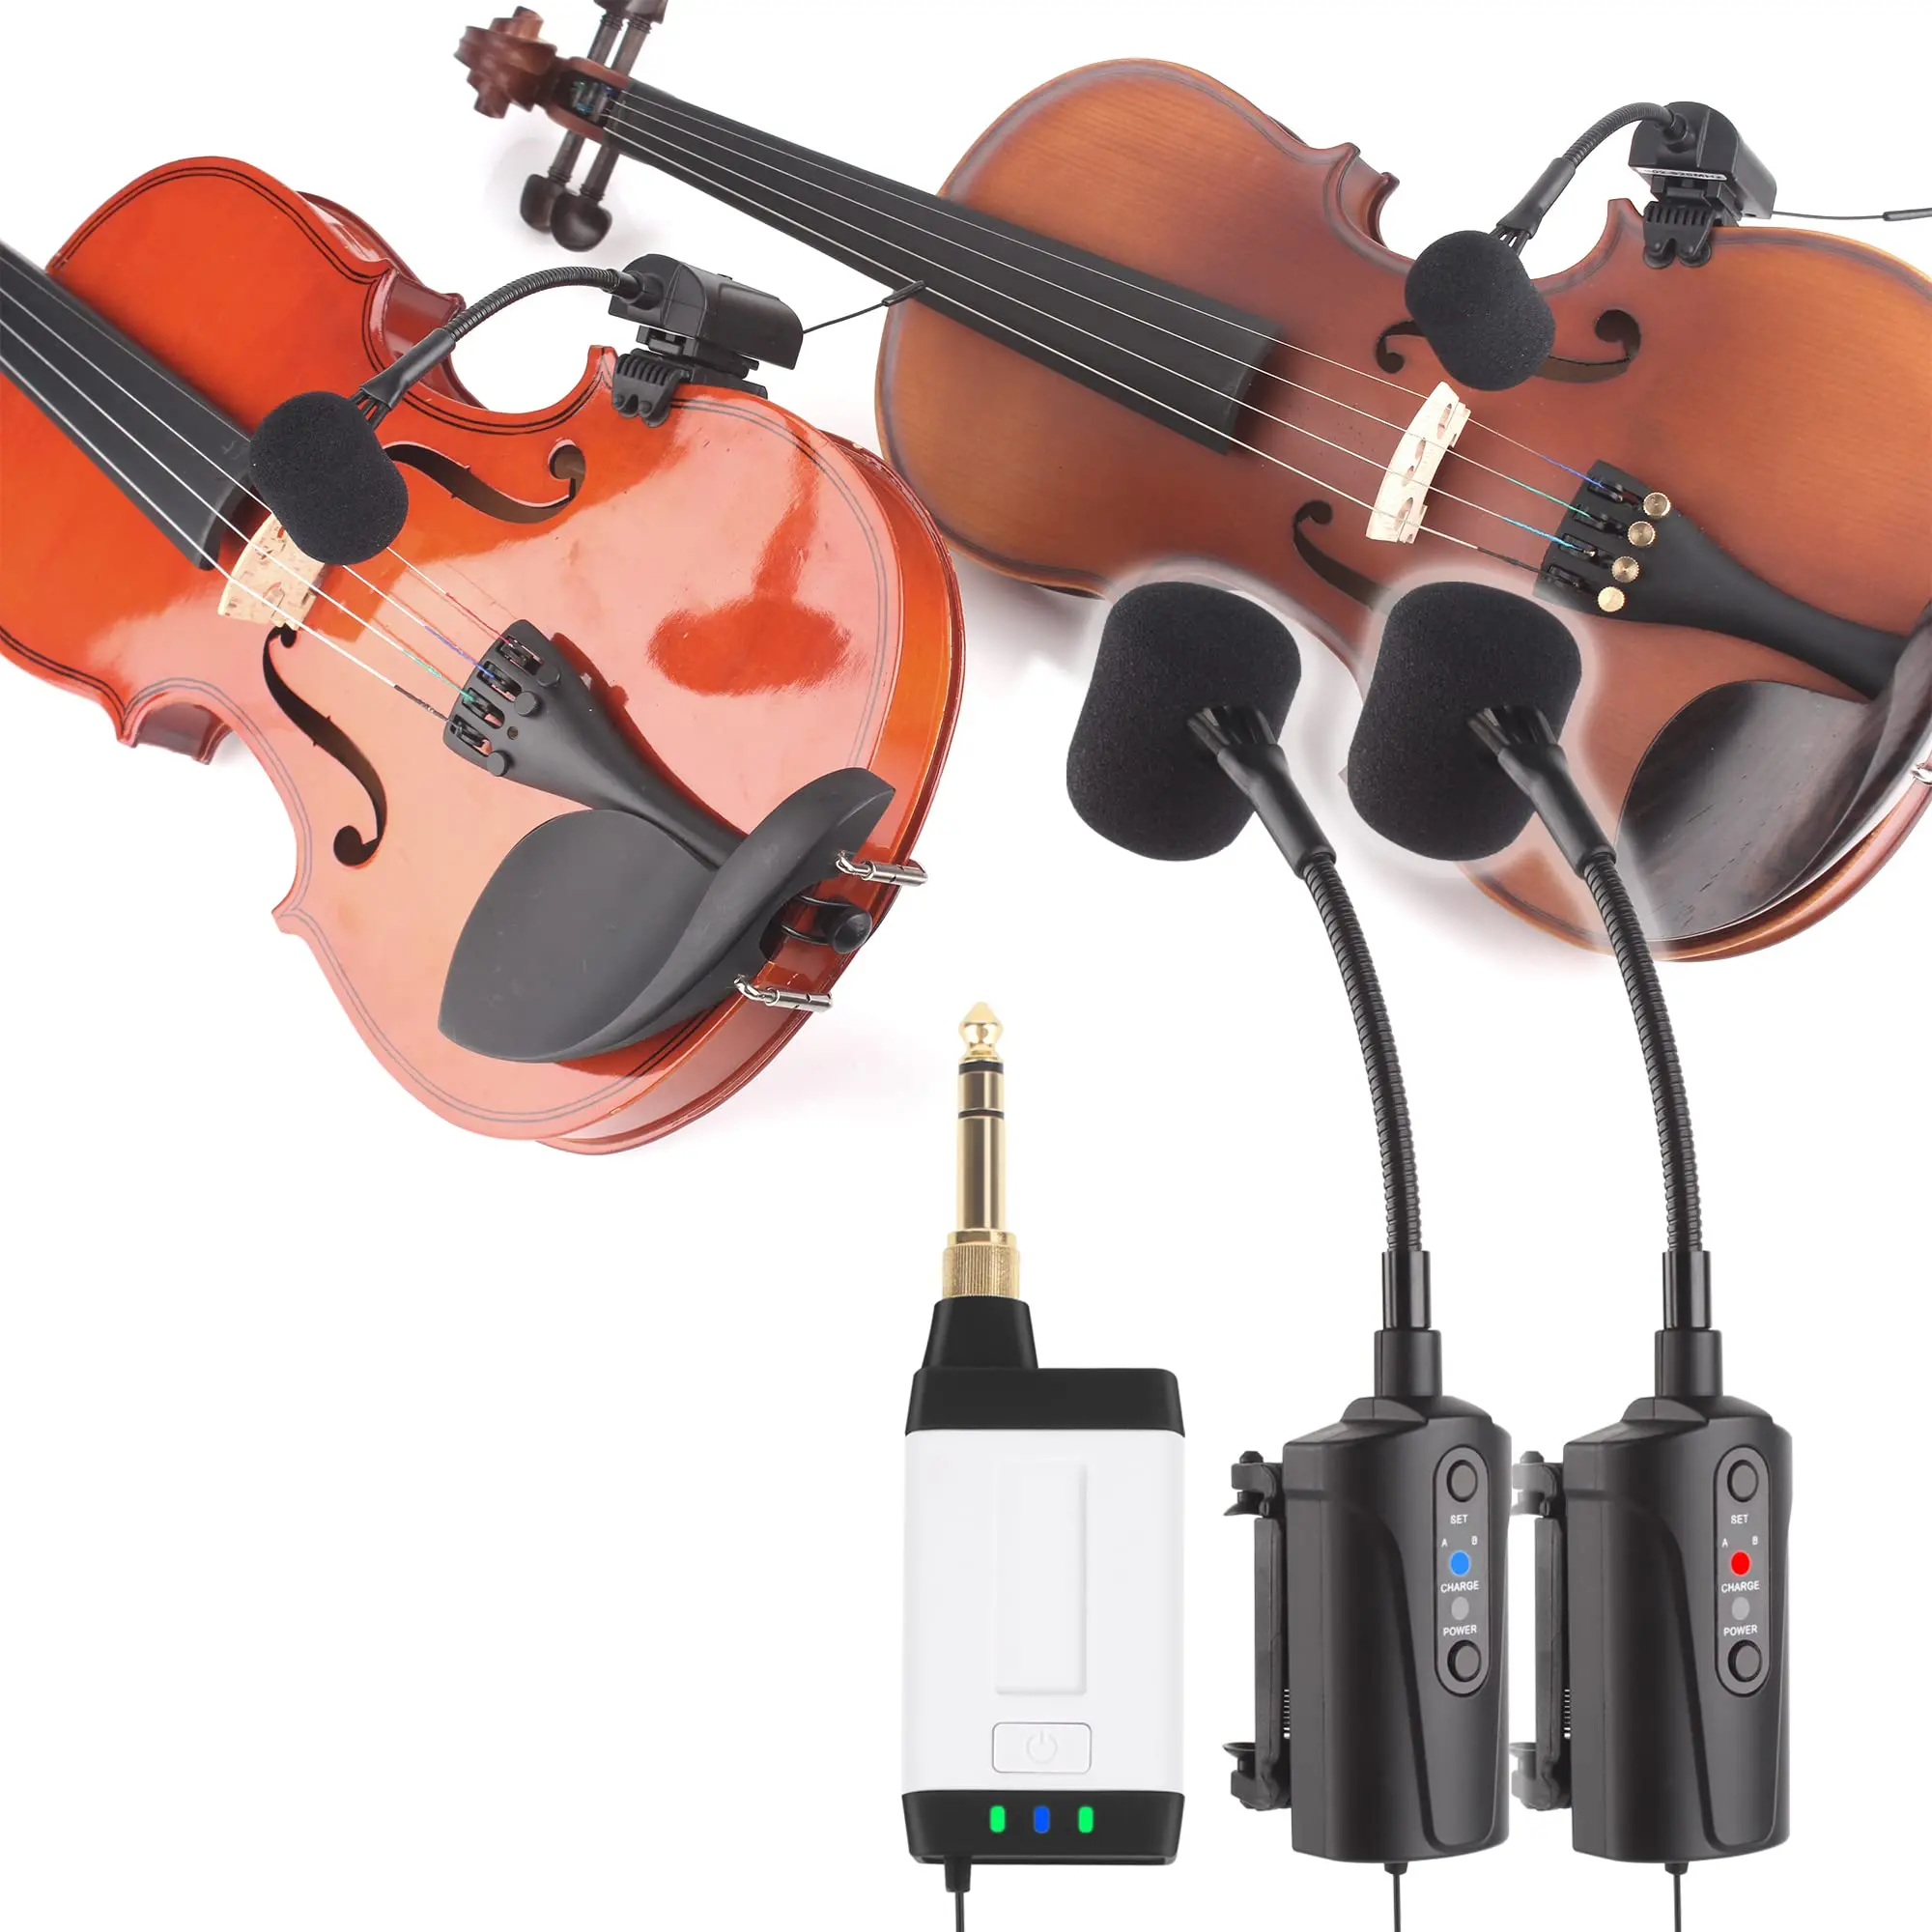 micro para violin - Los micrófonos de condensador son buenos para el violín